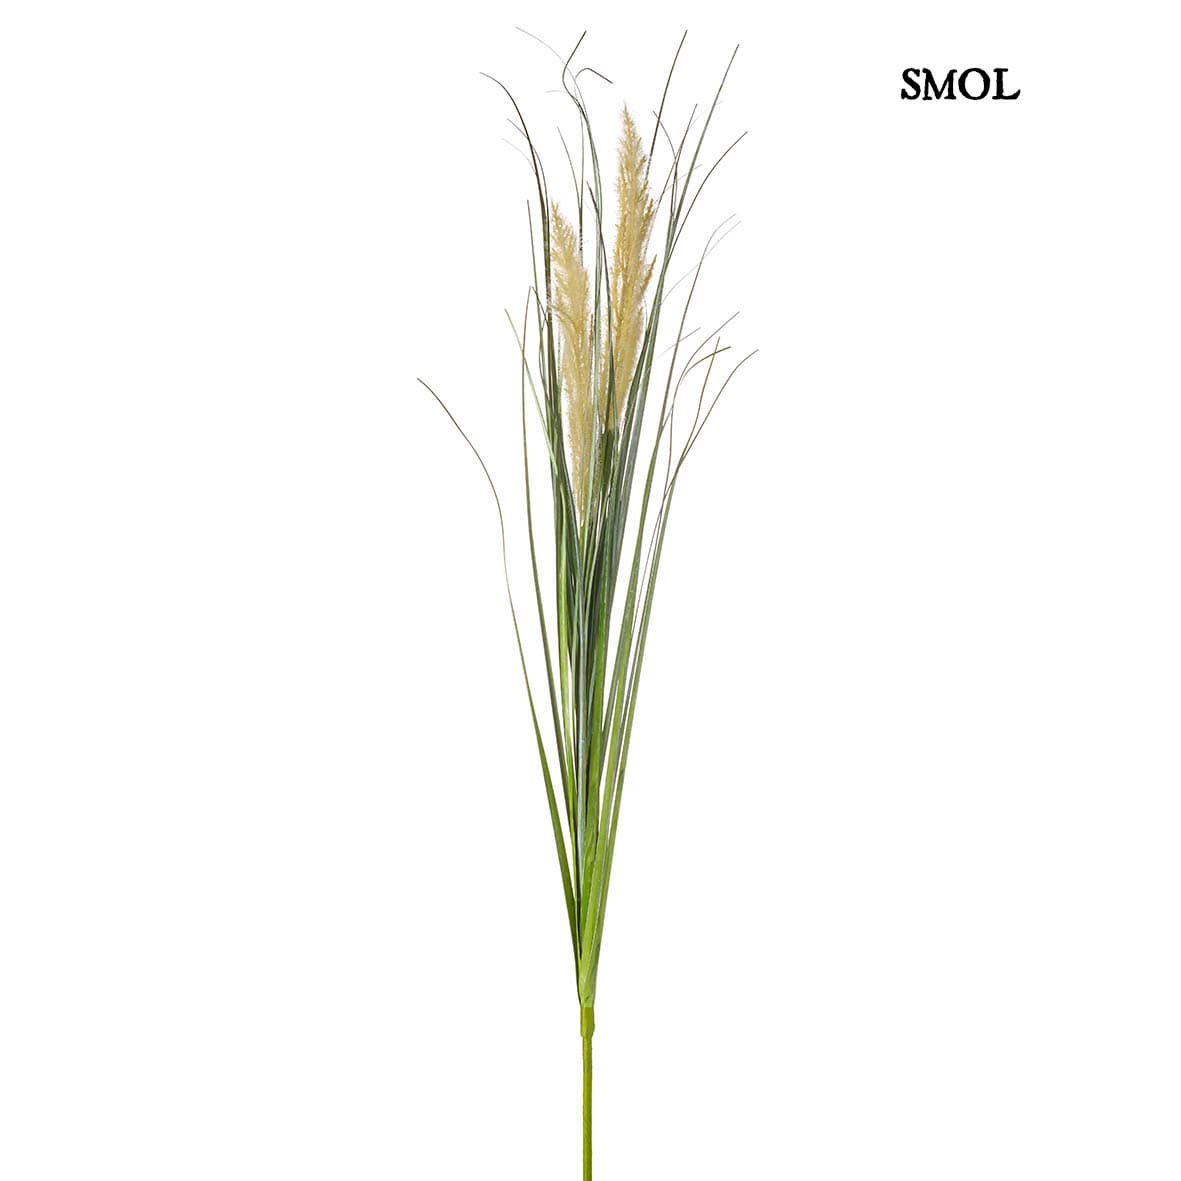 smol.hu - lelea tollas fű műnövény temékképe